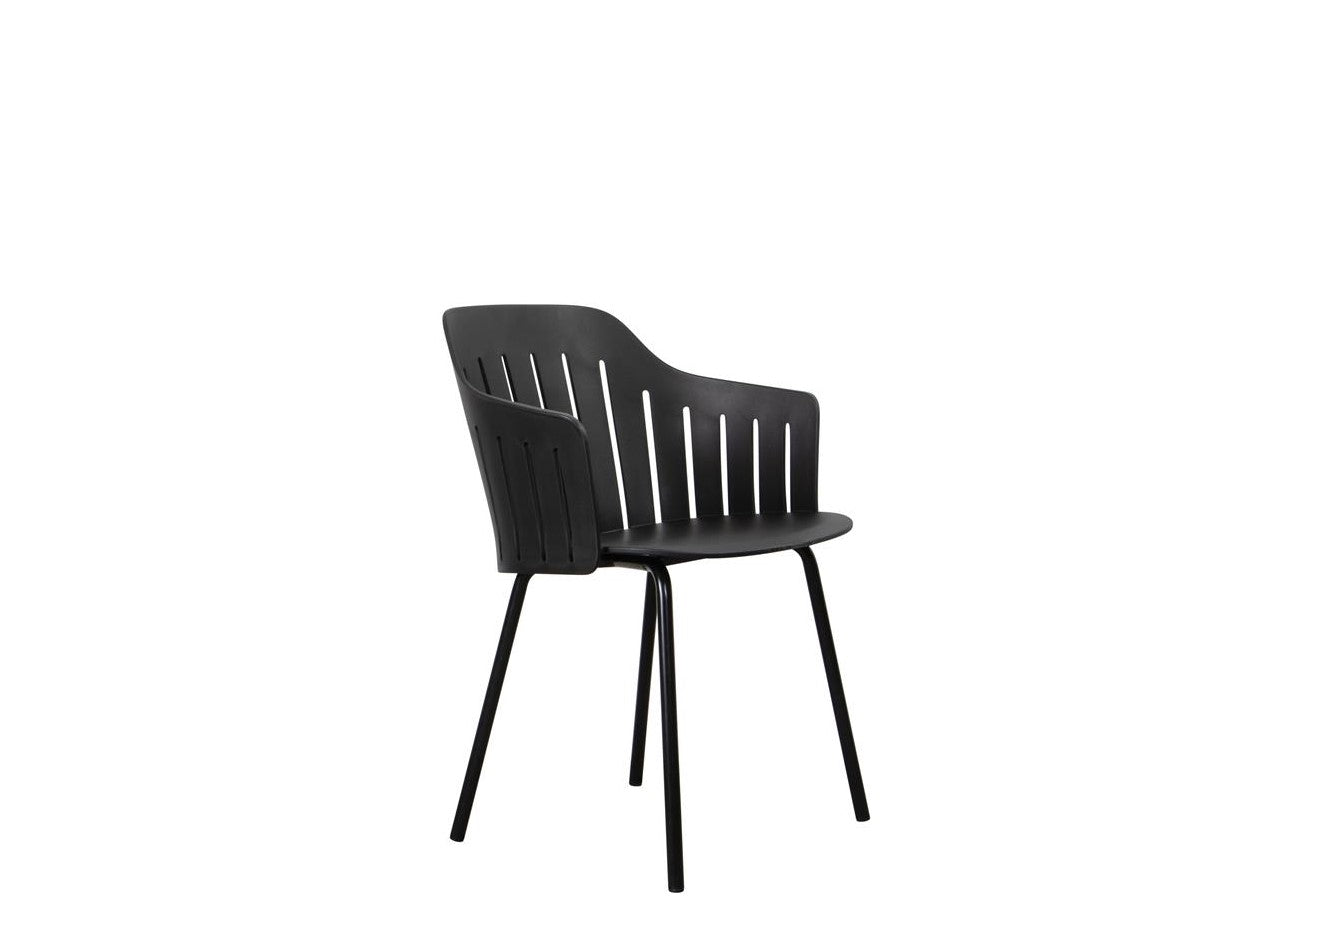 Choice Sessel black mit Gestell 4 Beine Stahl verzinkt schwarz stapelbar